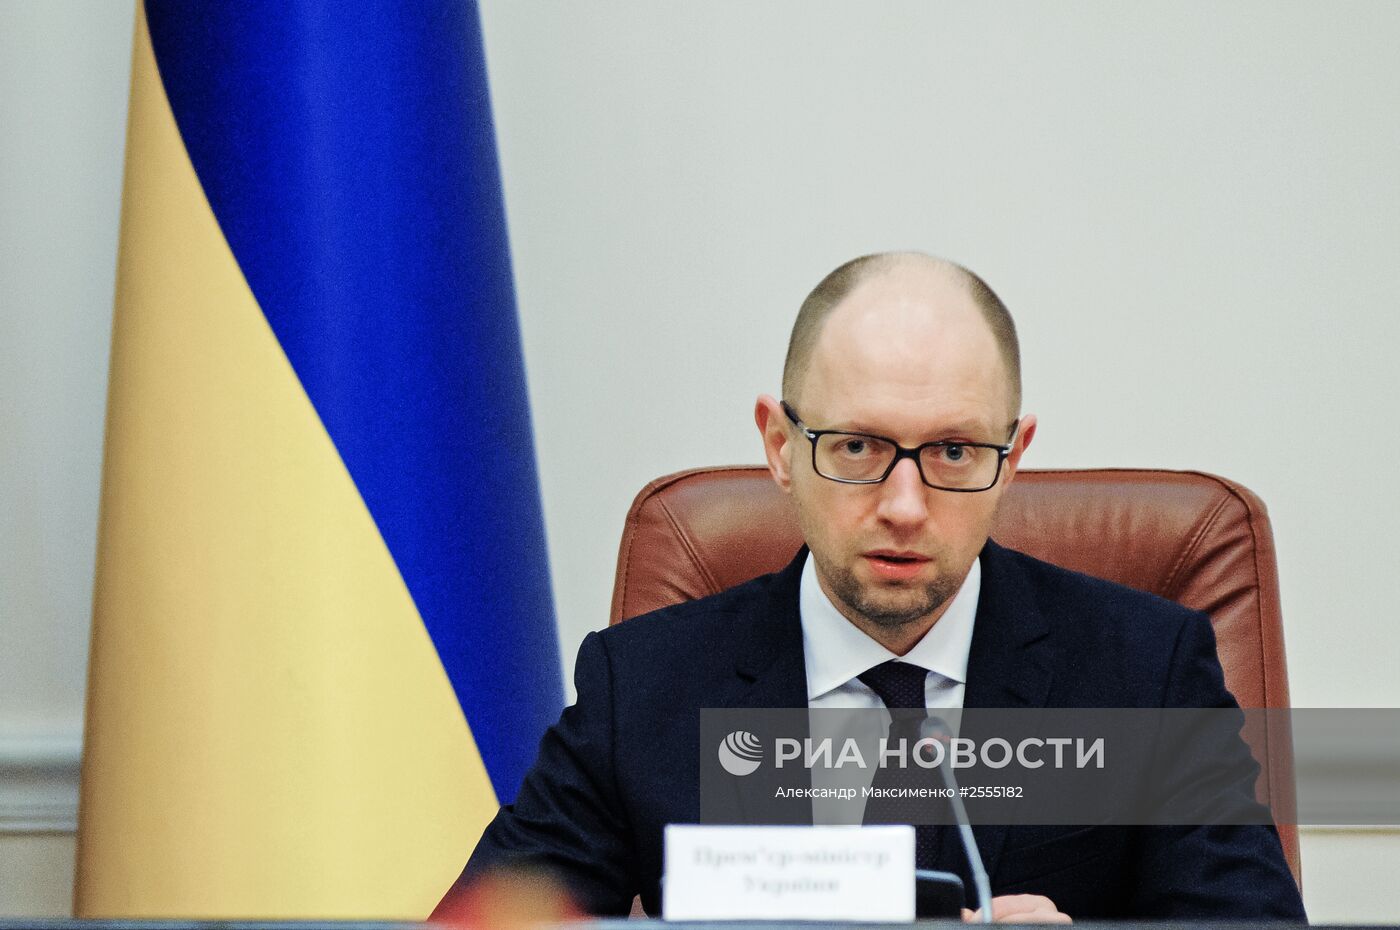 А.Яценюк провел заседание кабинета министров Украины